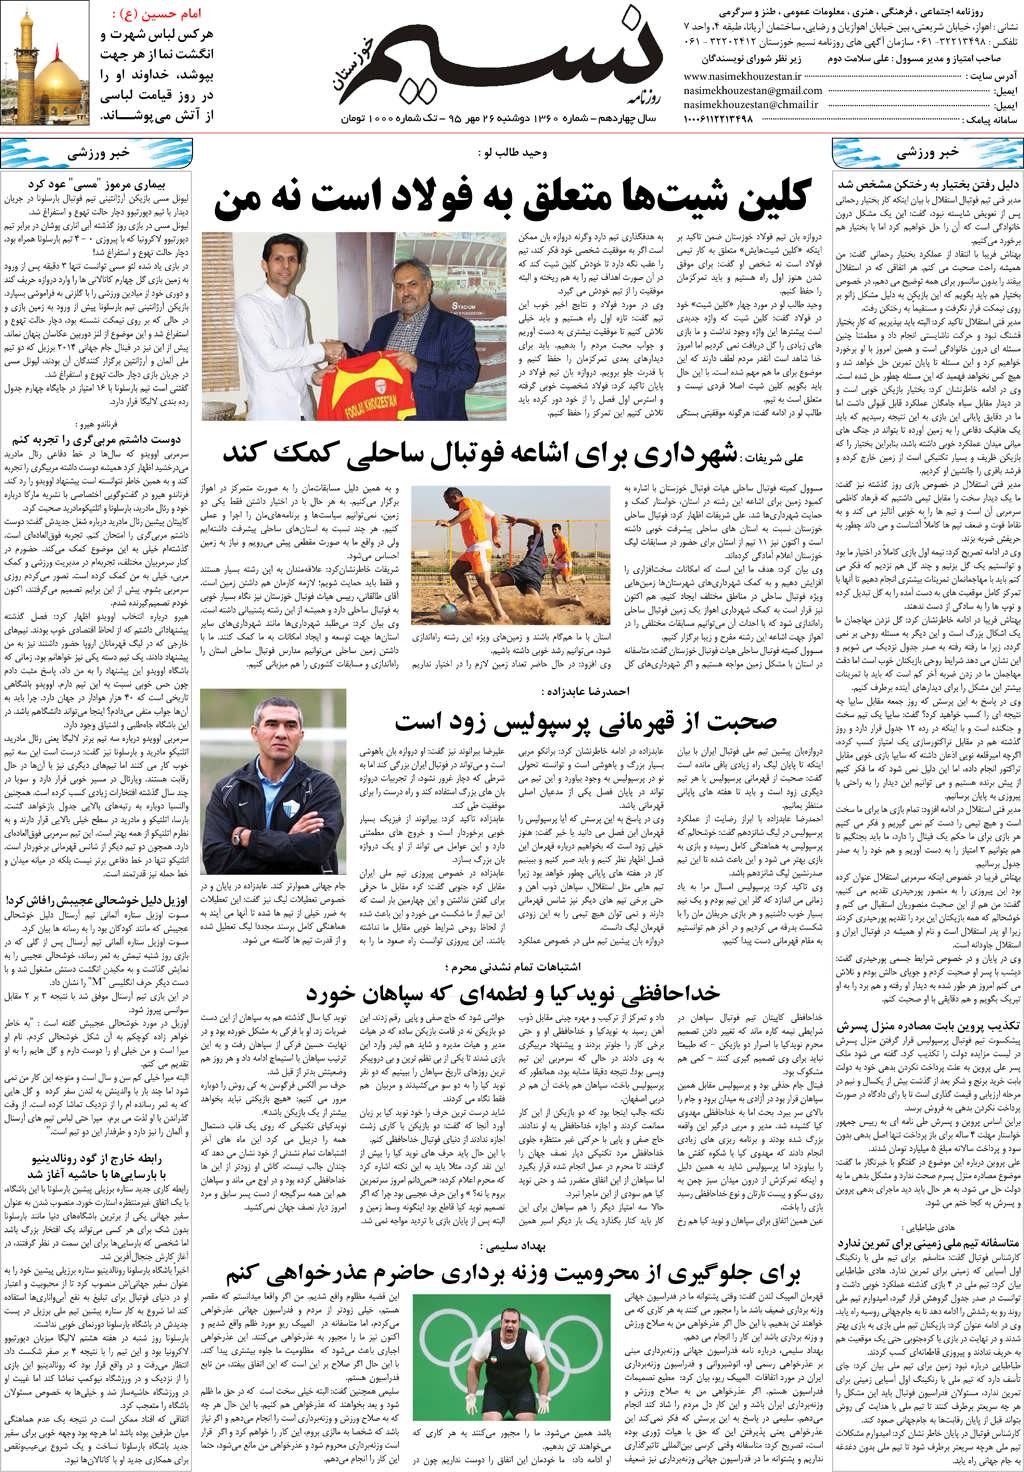 صفحه آخر روزنامه نسیم شماره 1360